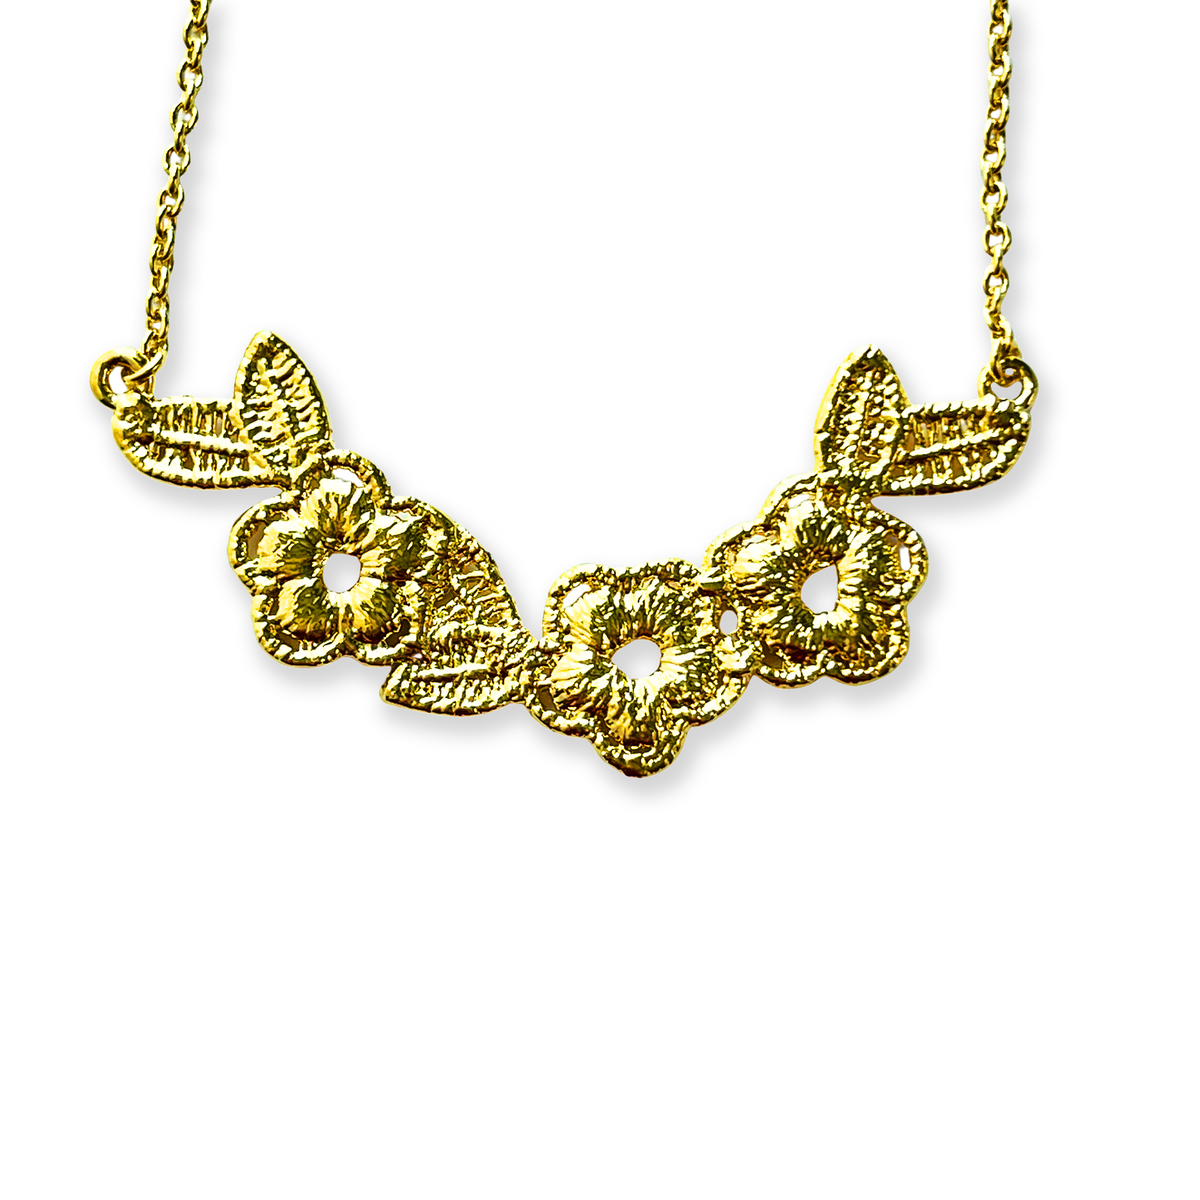 Ella Lace Flower Earrings in sterling silver and 24k gold - Monika